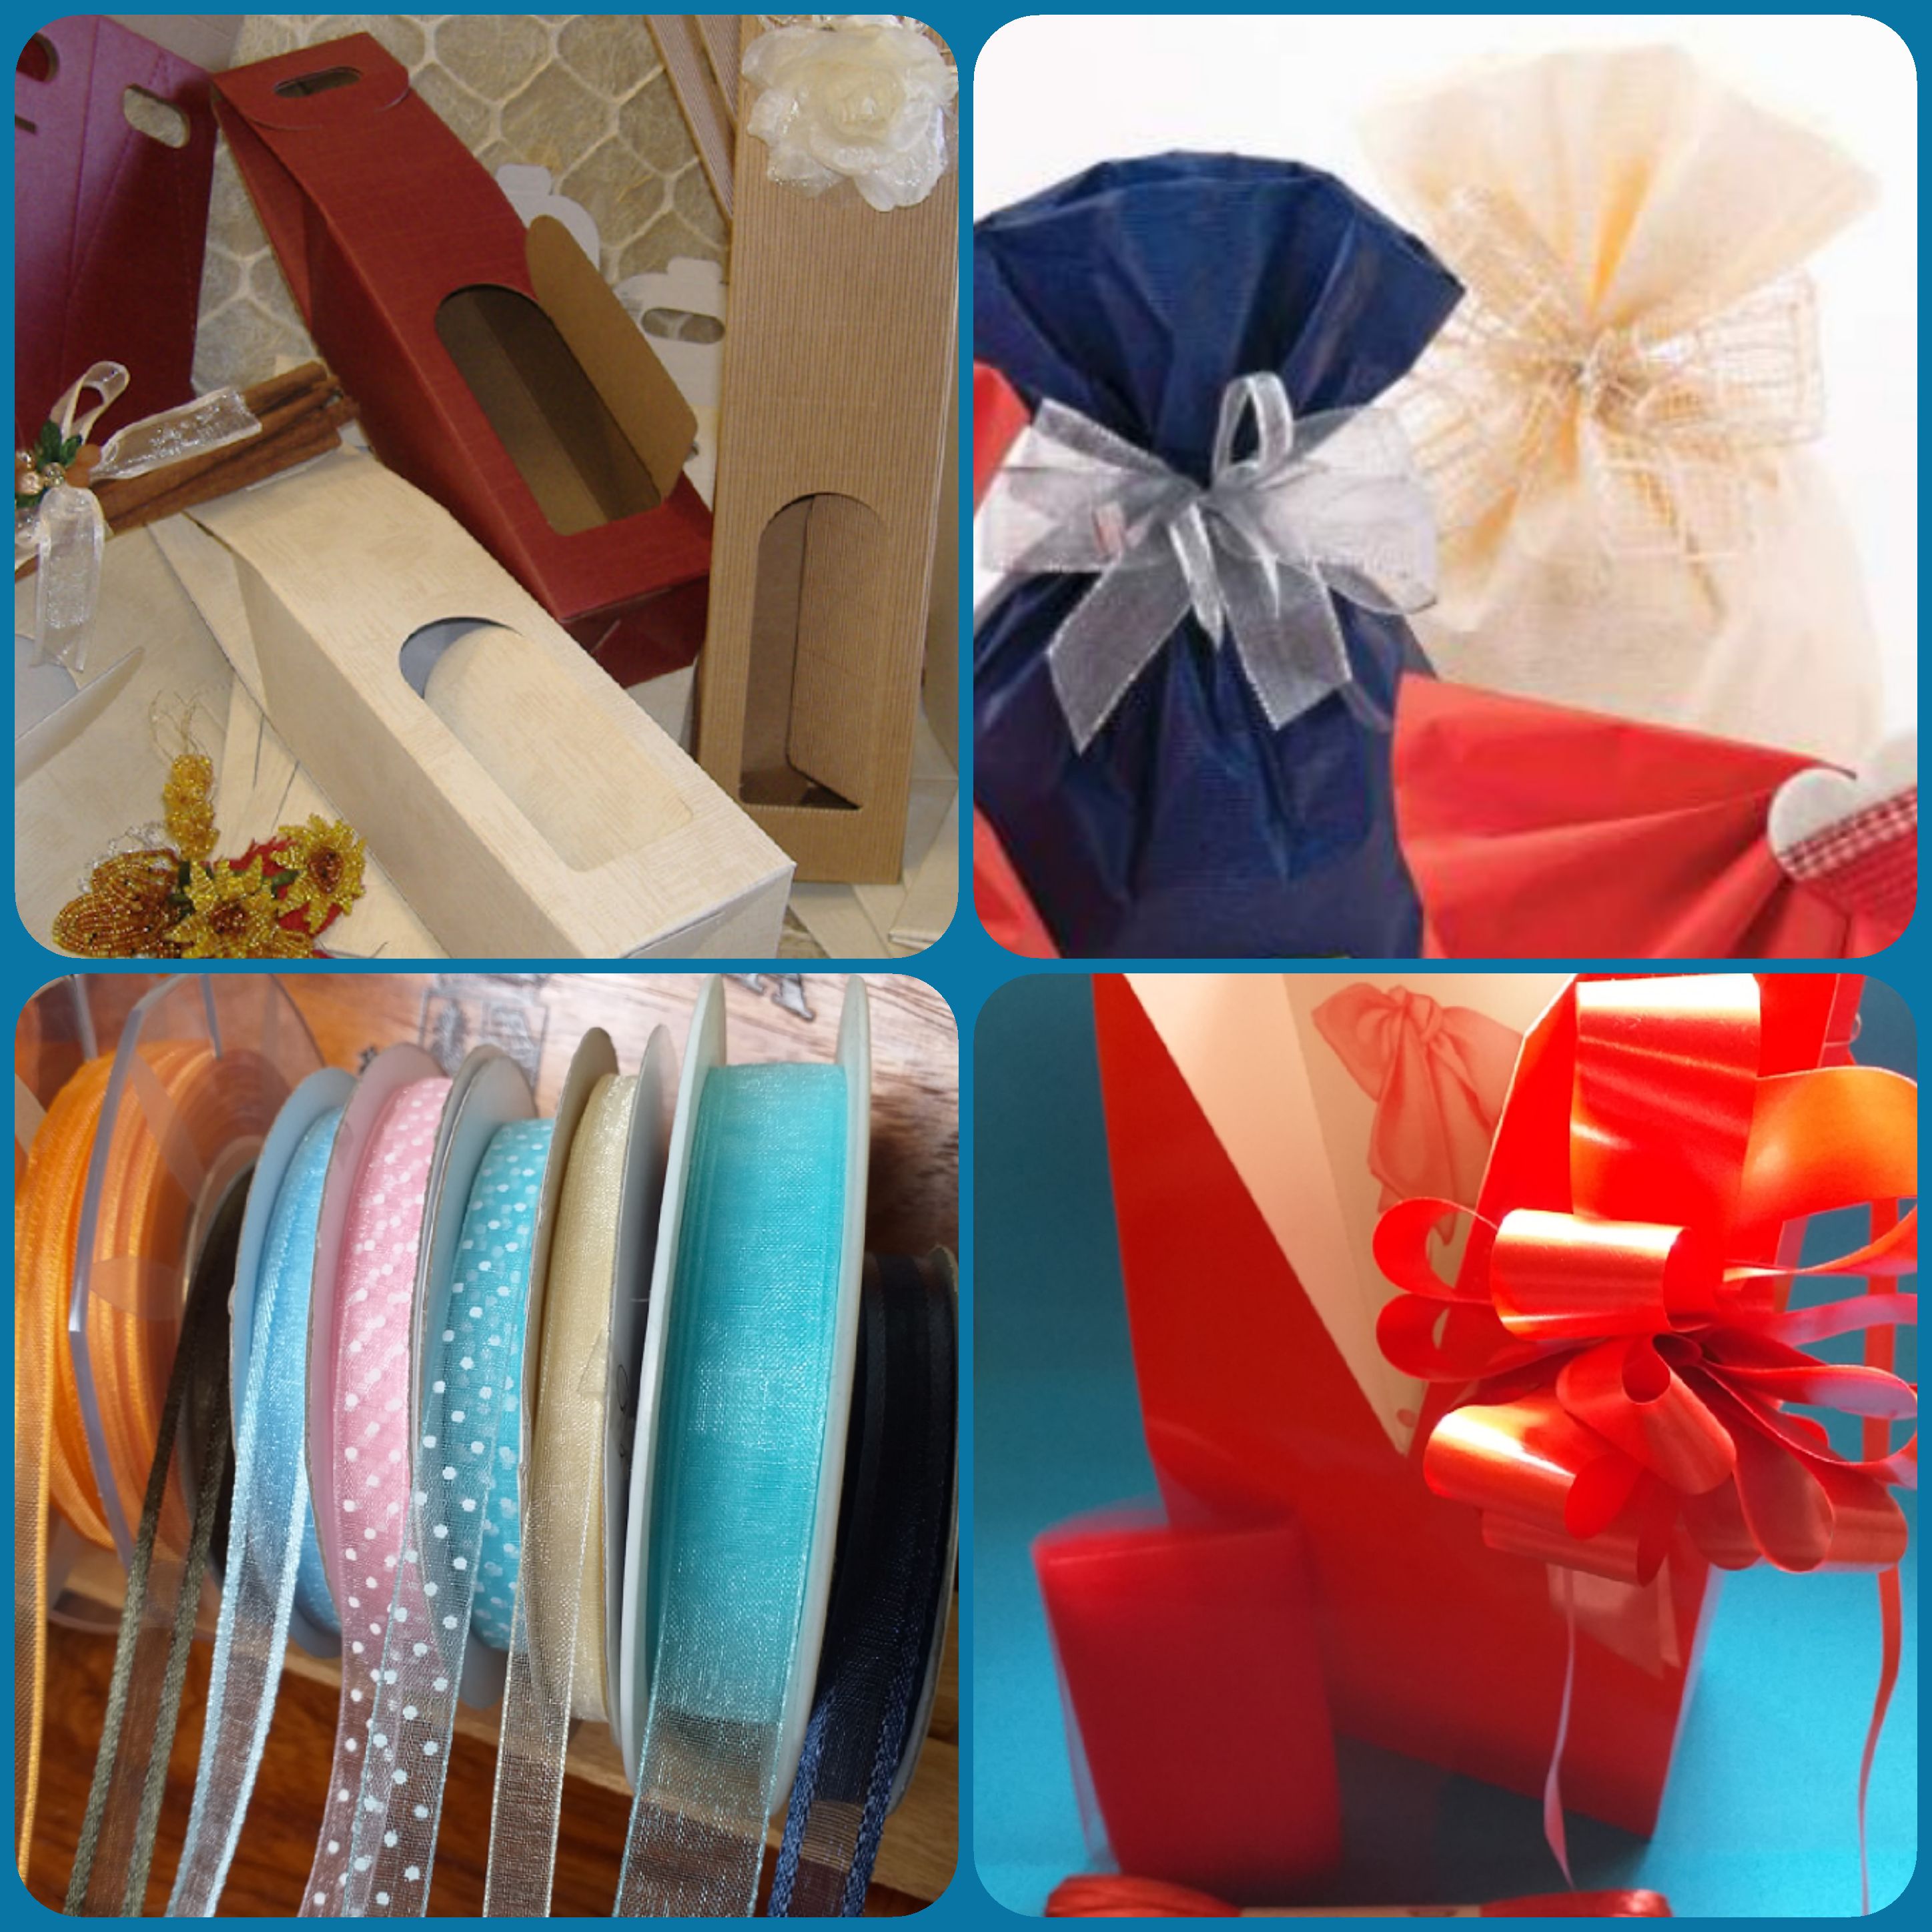 Ordinare online sacchetti regalo in carta colorata?